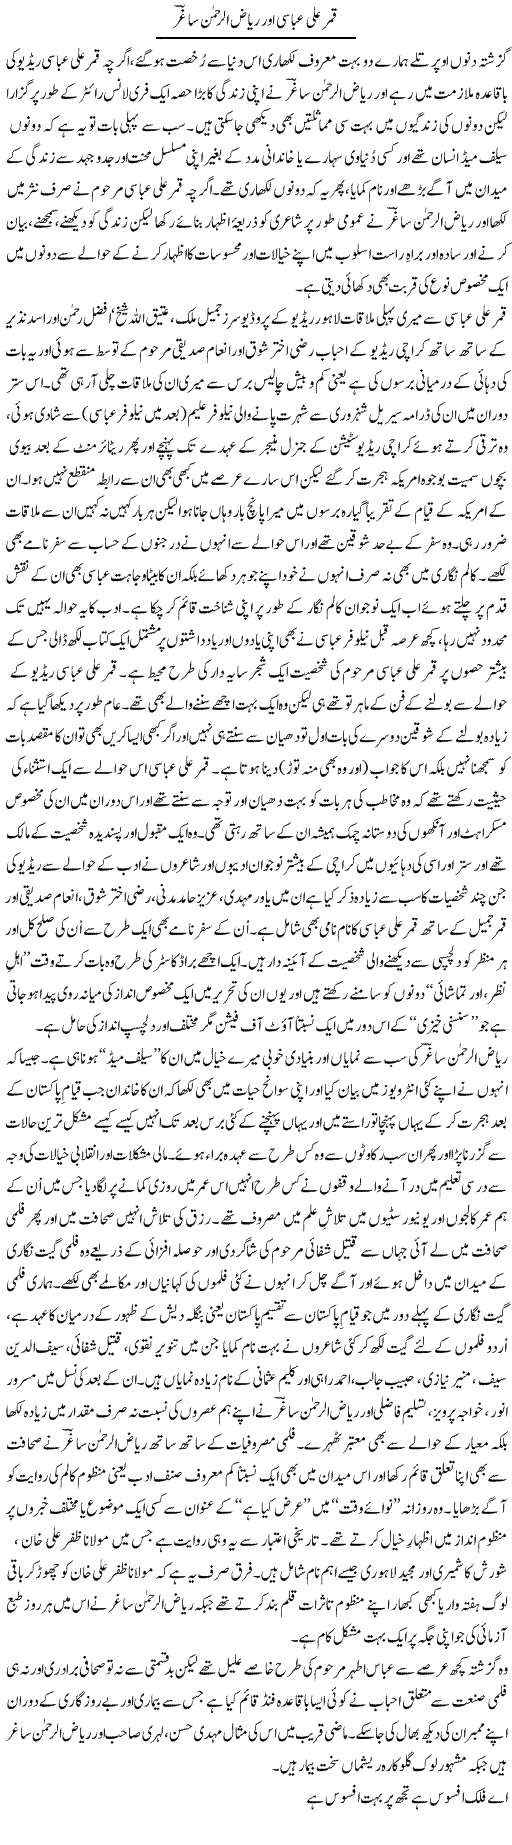 Qamar Ali Abbasi Our Riaz Ur Rehman Sagir | Amjad Islam Amjad | Daily Urdu Columns